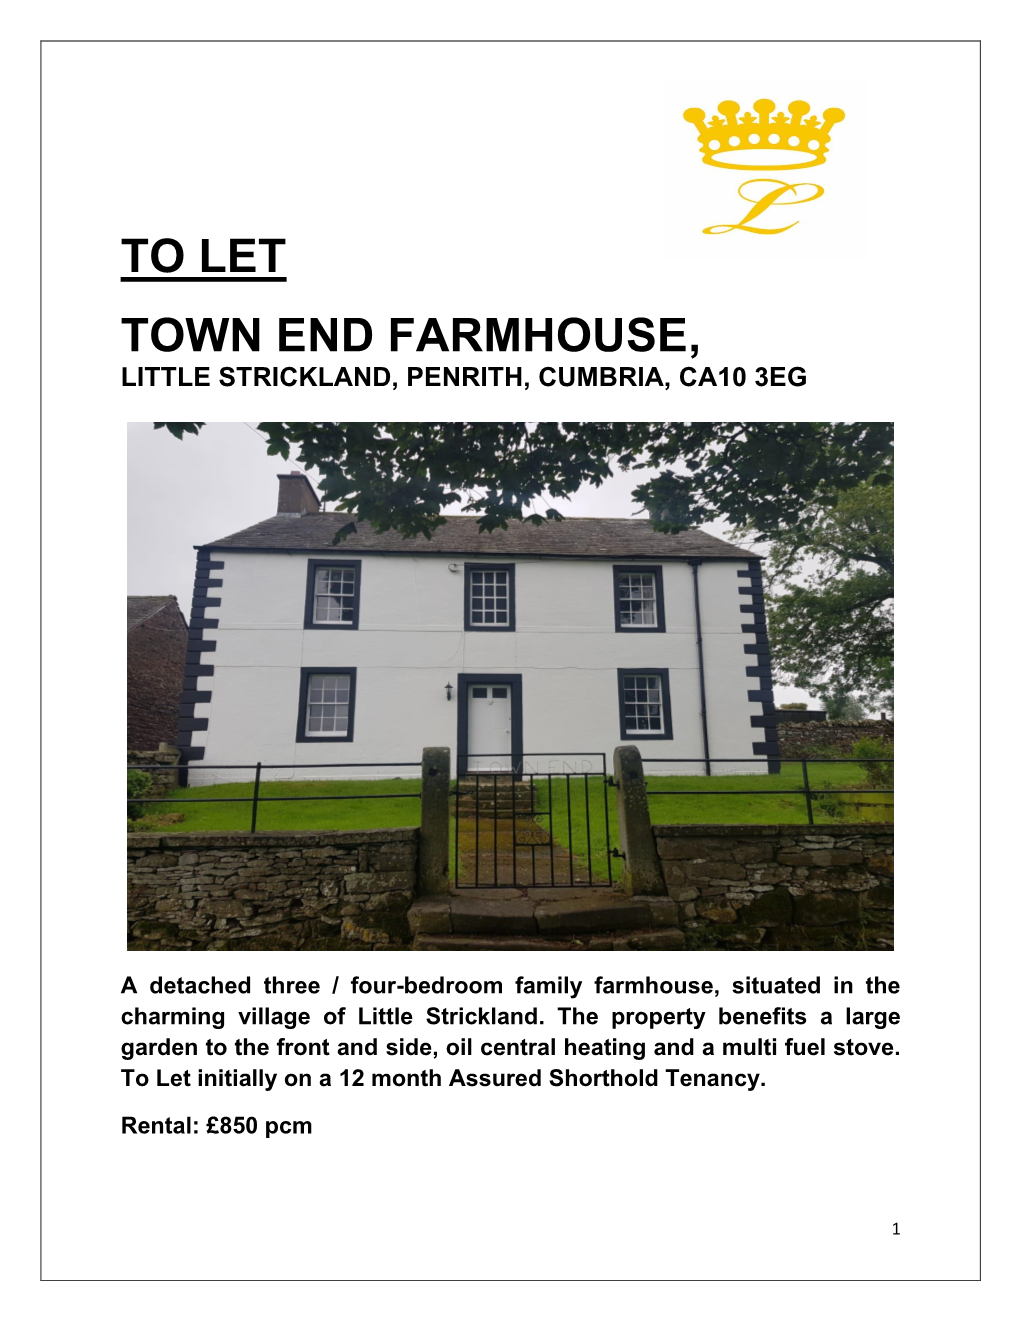 To Let Town End Farmhouse